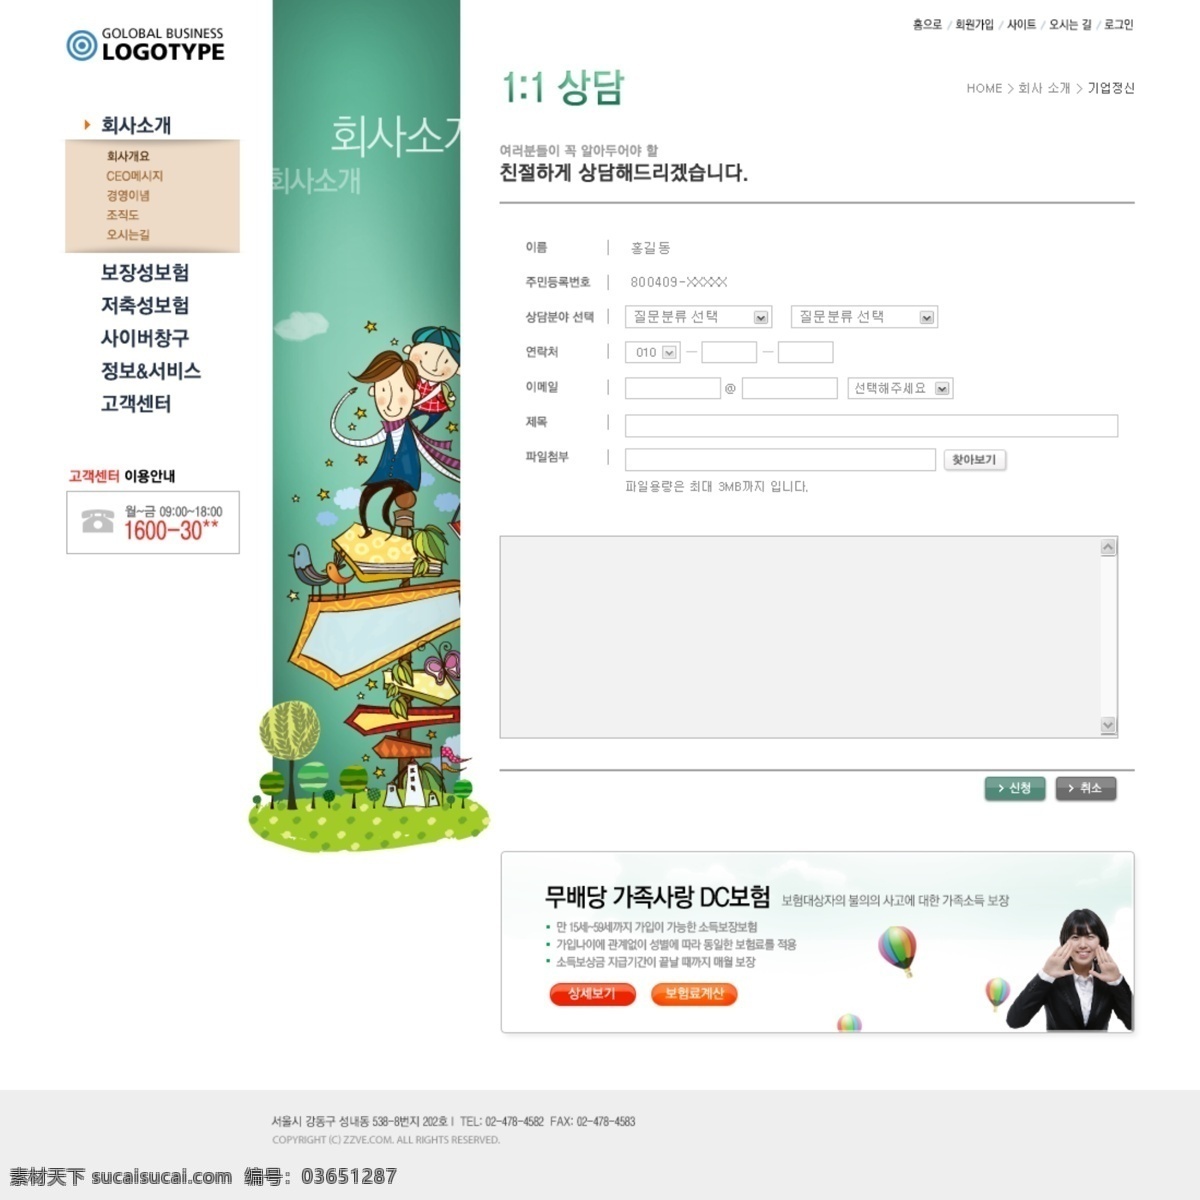 左 中右 三 列 式 网页设计 分层 源文件 网页模板 网页界面 界面设计 网页版式 版式设计 网页布局 韩国模板 卡通 漫画 插画 人物 web 韩文模板 白色